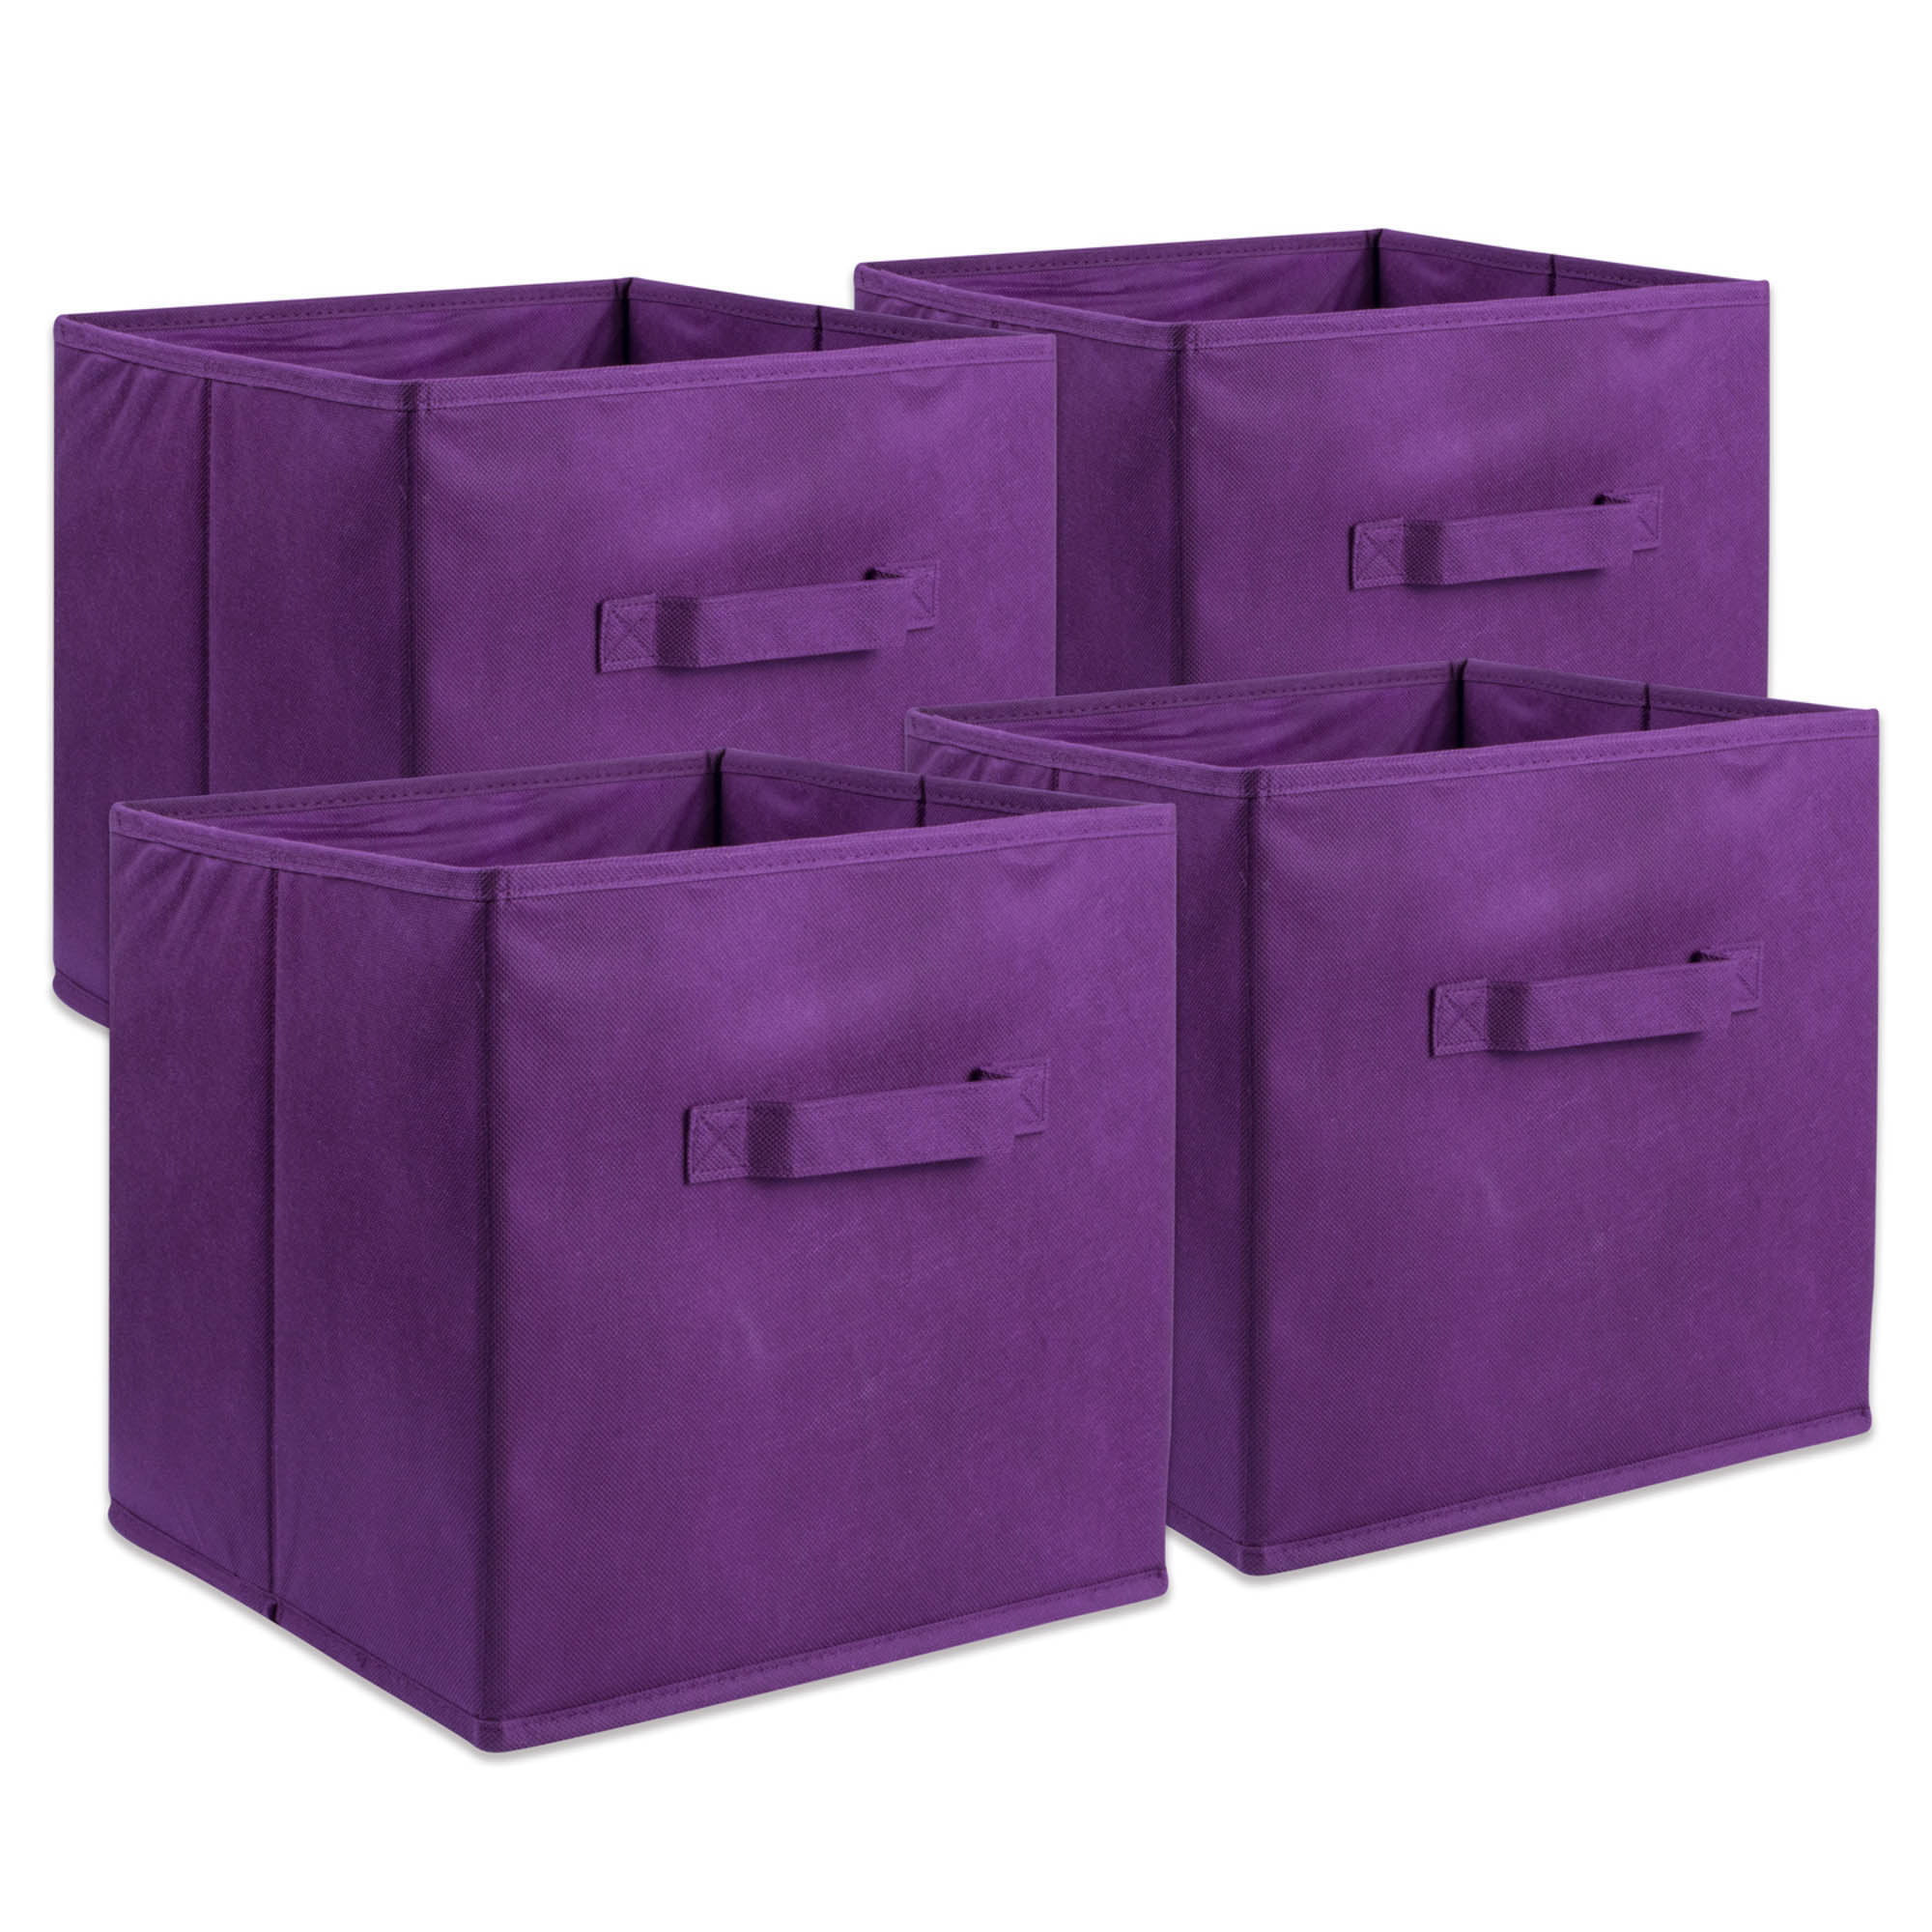 Details about   6Pcs Large Foldable Storage Bin Basket Cube W/Handles,Home Closet & Office,Beige 